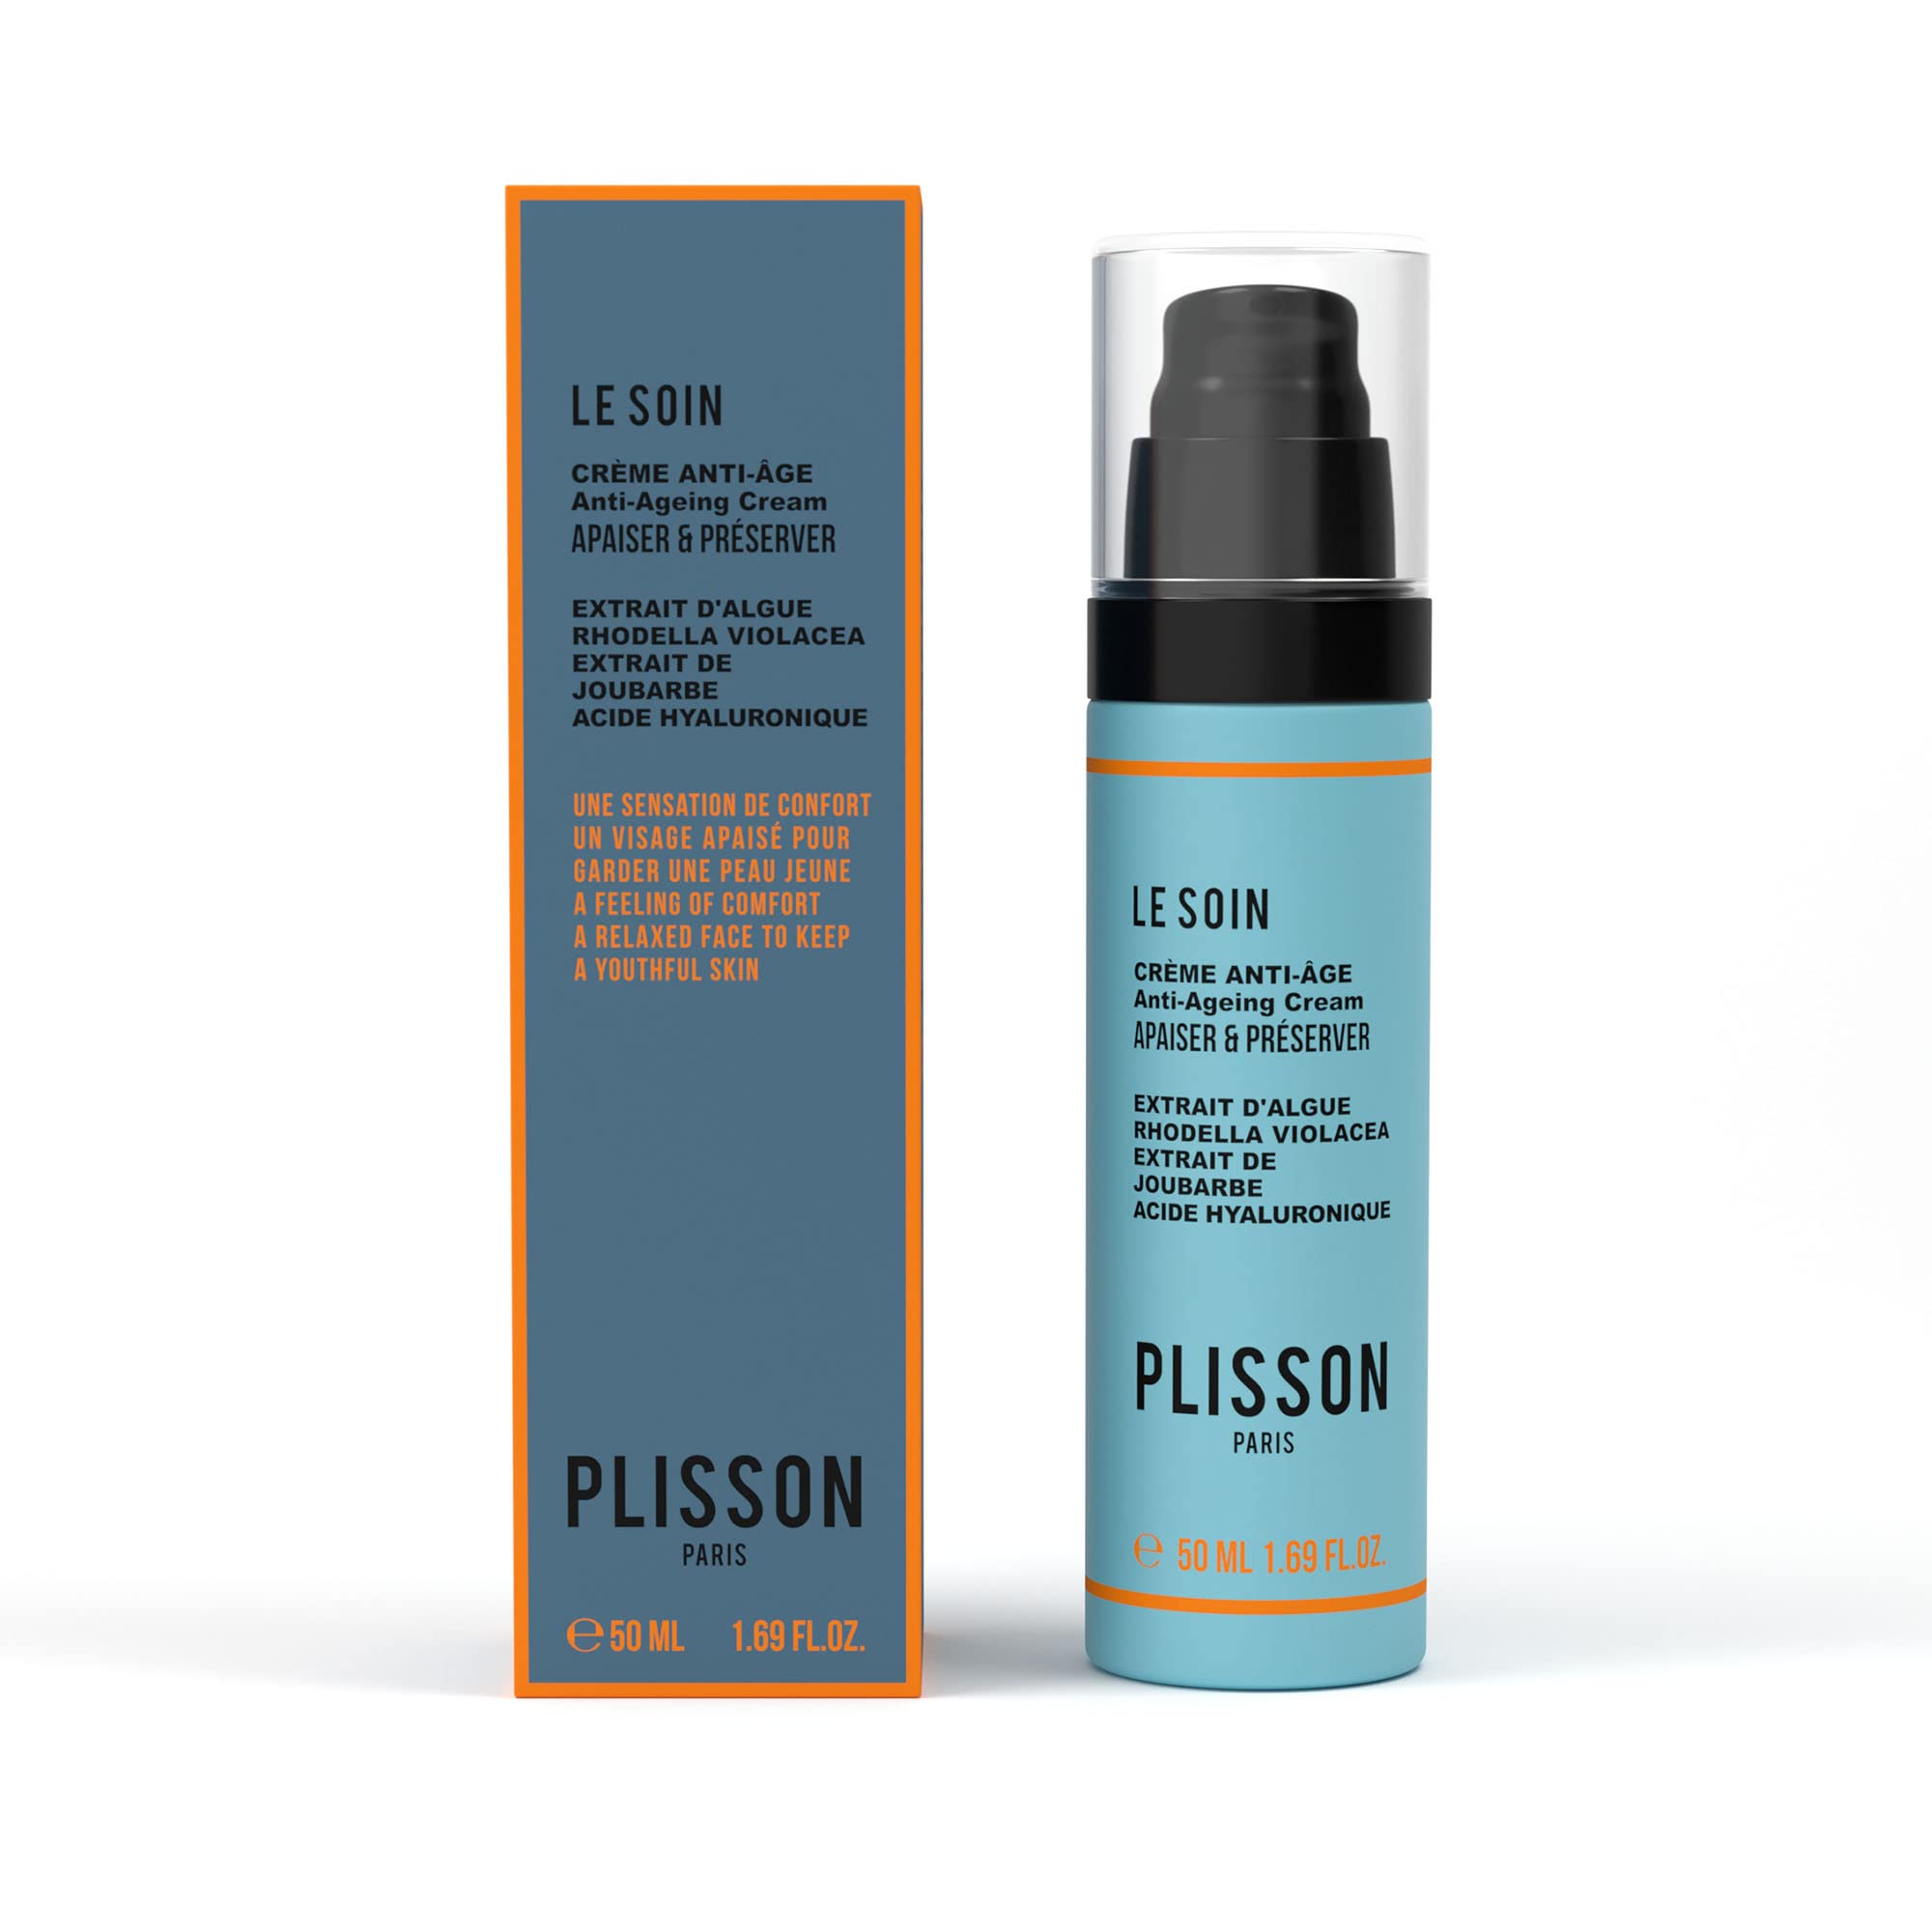 Plisson - Anti-Aging-Creme für das Gesicht für Herren – angereichert mit natürlicher Hyaluronsäure – 99 % Inhaltsstoffe natürlichen Ursprungs, Rhodella-Alge Violacea und Hauswurm – hergestellt in